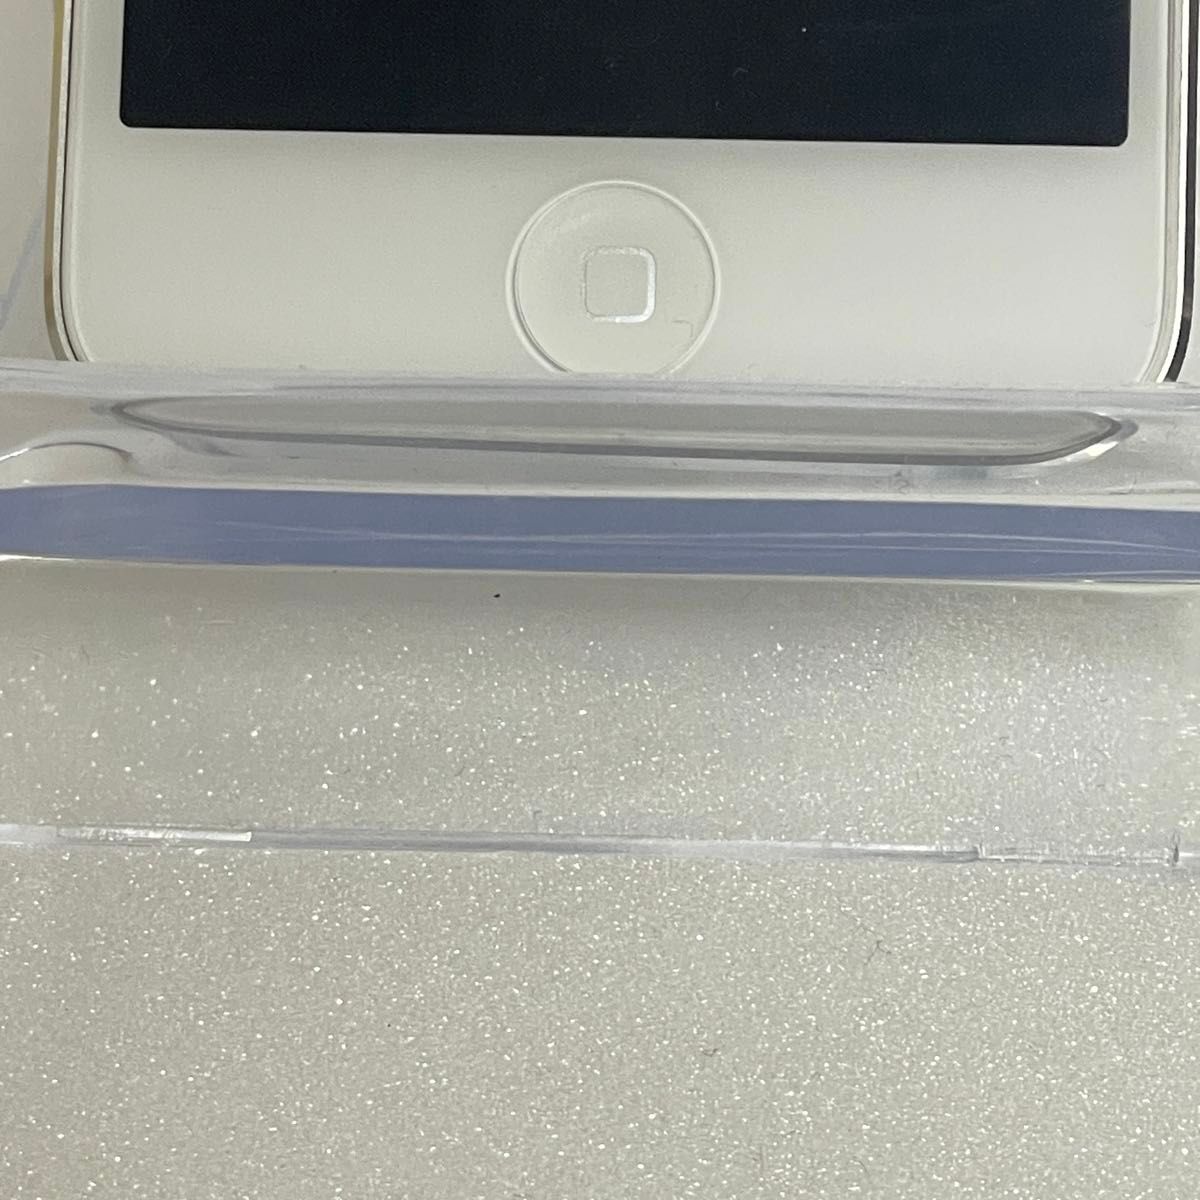 【新品同様品】iPod touch 第7世代 32GB シルバー